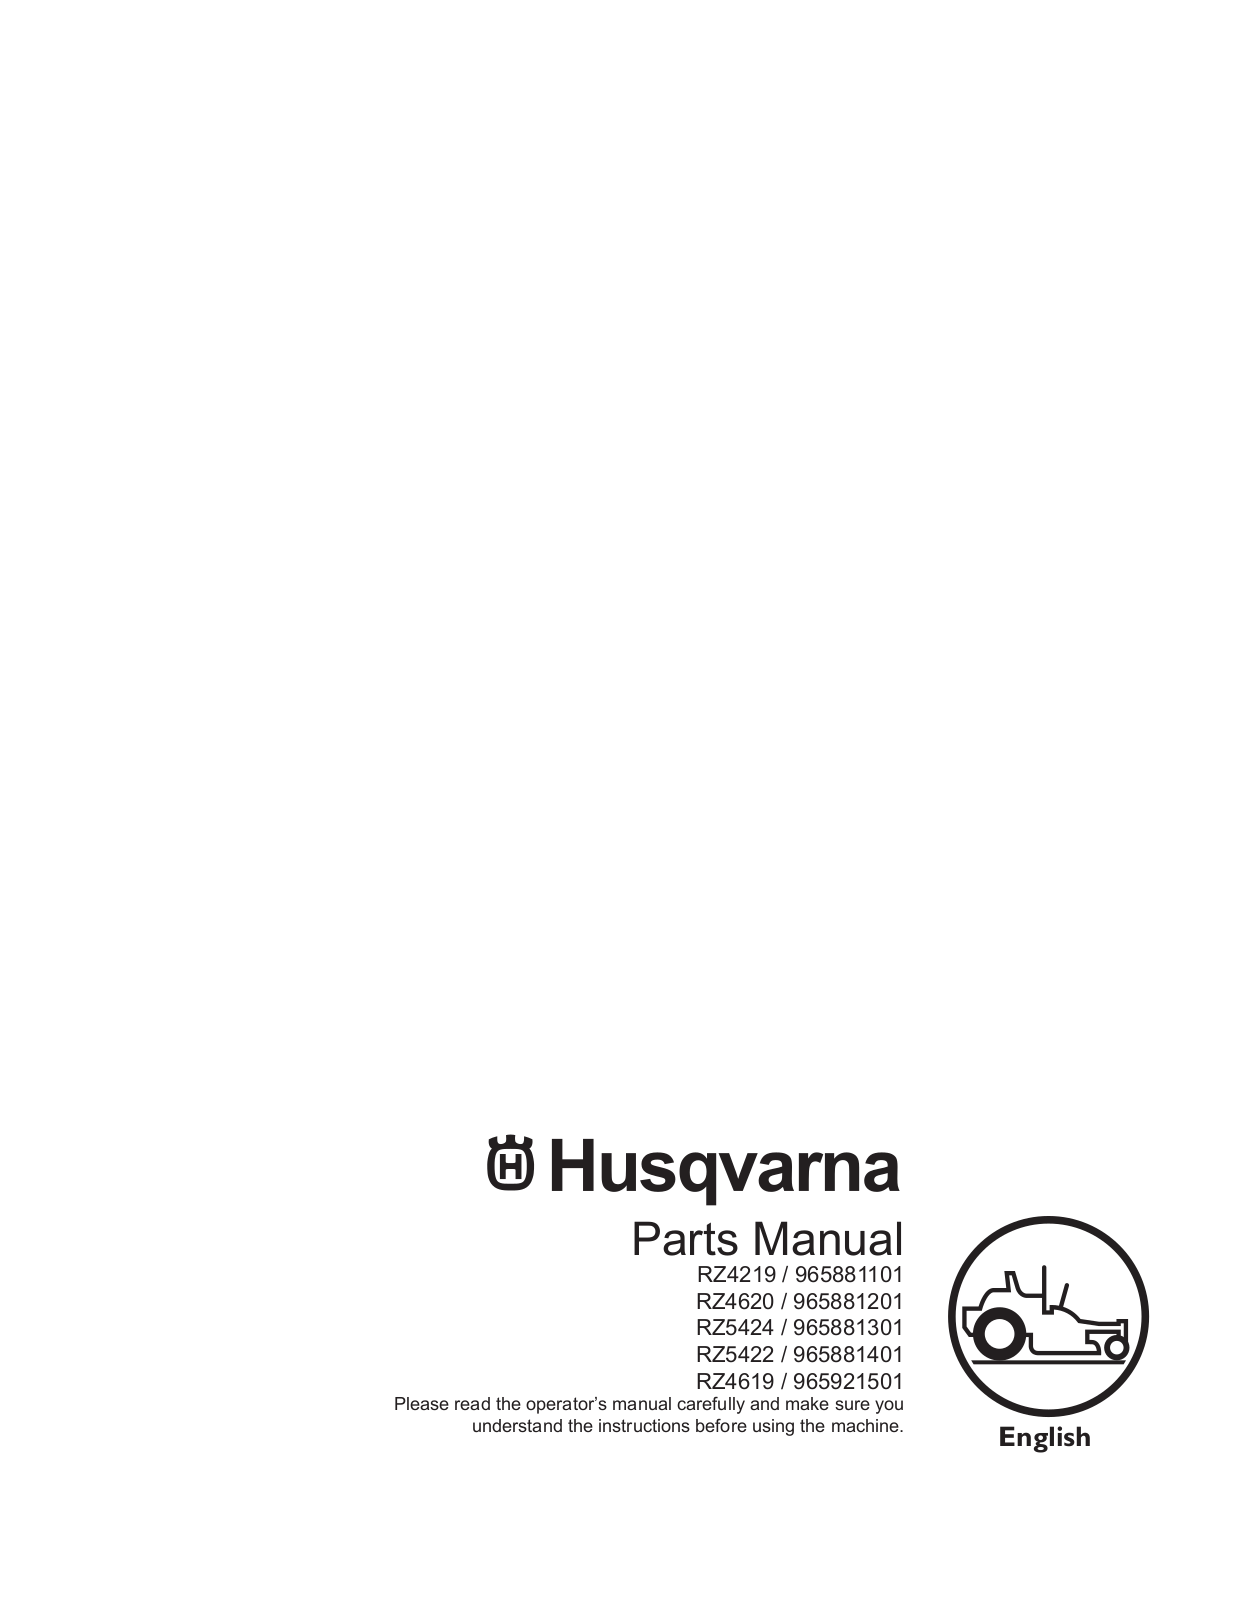 Husqvarna RZ4619, RZ5422, RZ4620 - 965881201, 965881301, RZ5424 - 965881301 User Manual